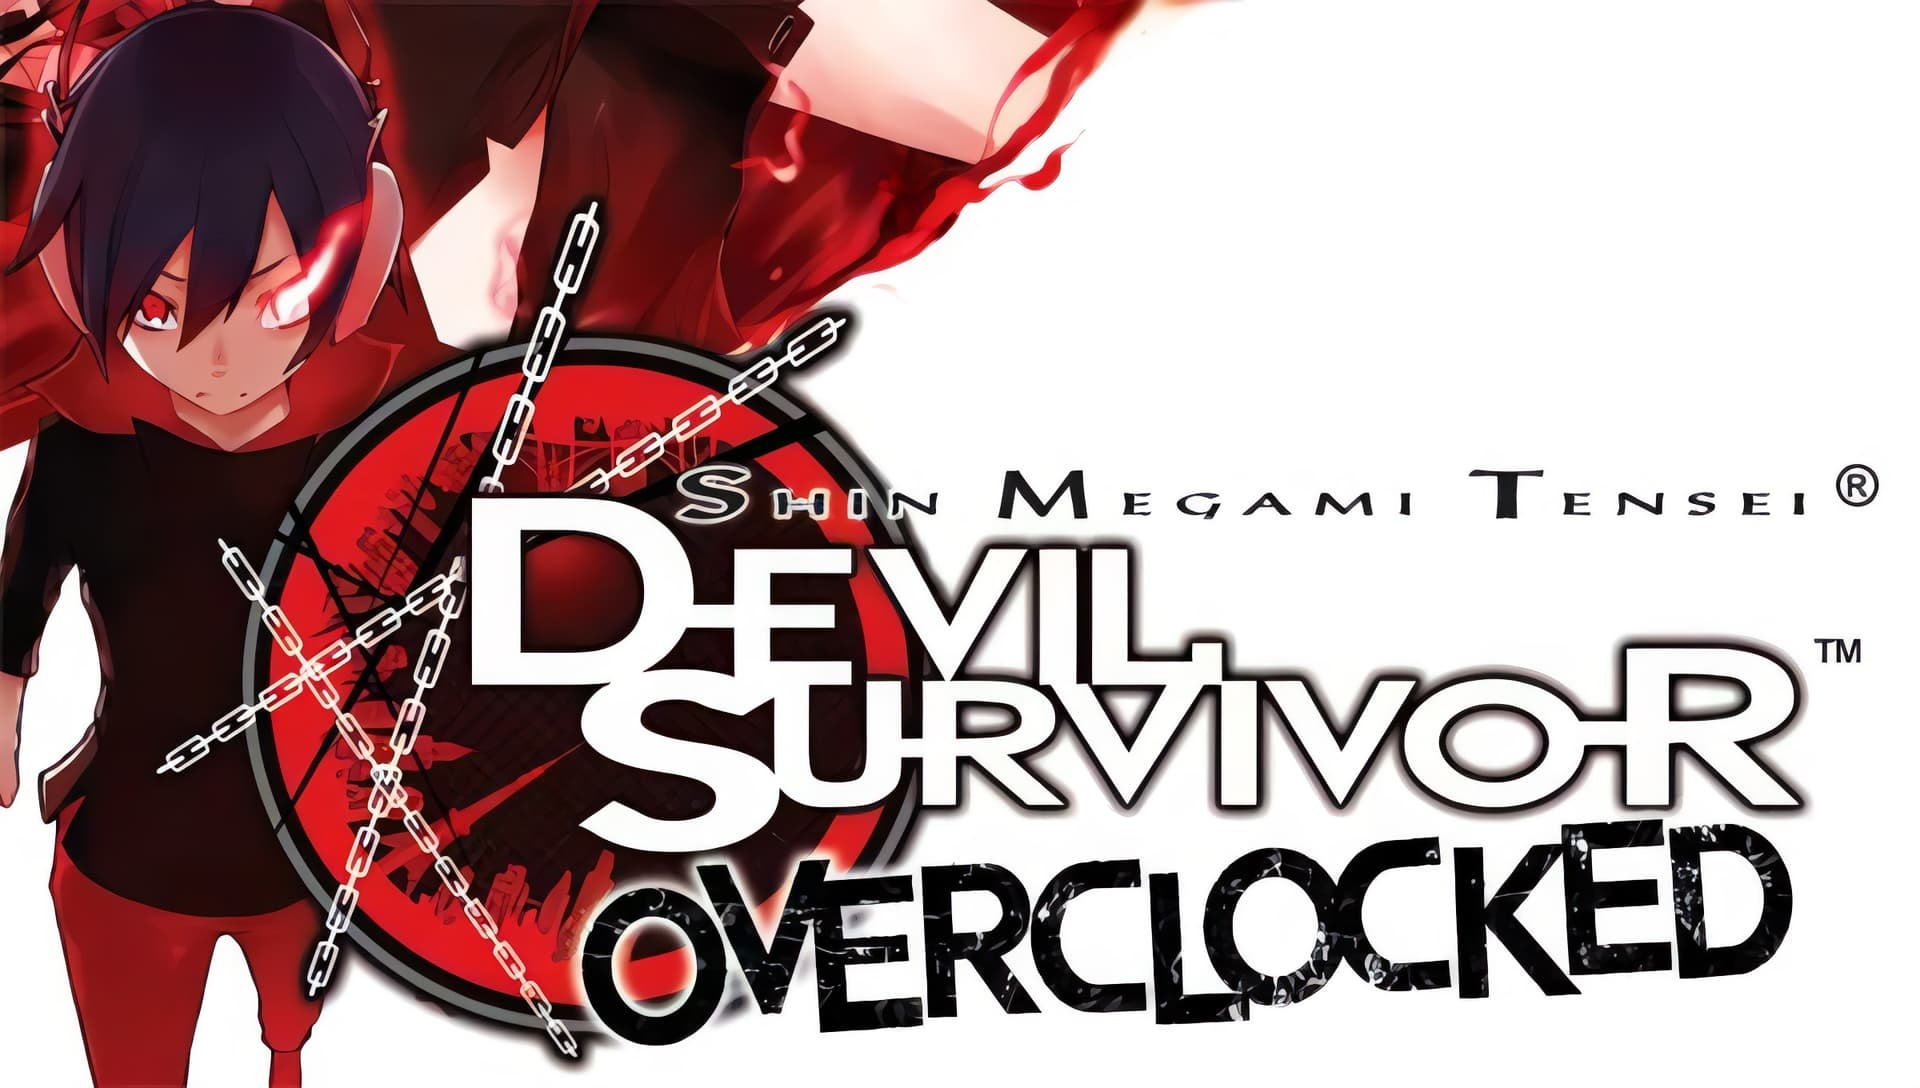 Devil Survivor 2 anime, SMT devil survivor, Overclocked HD texture, Media citra community, 1920x1090 HD Desktop